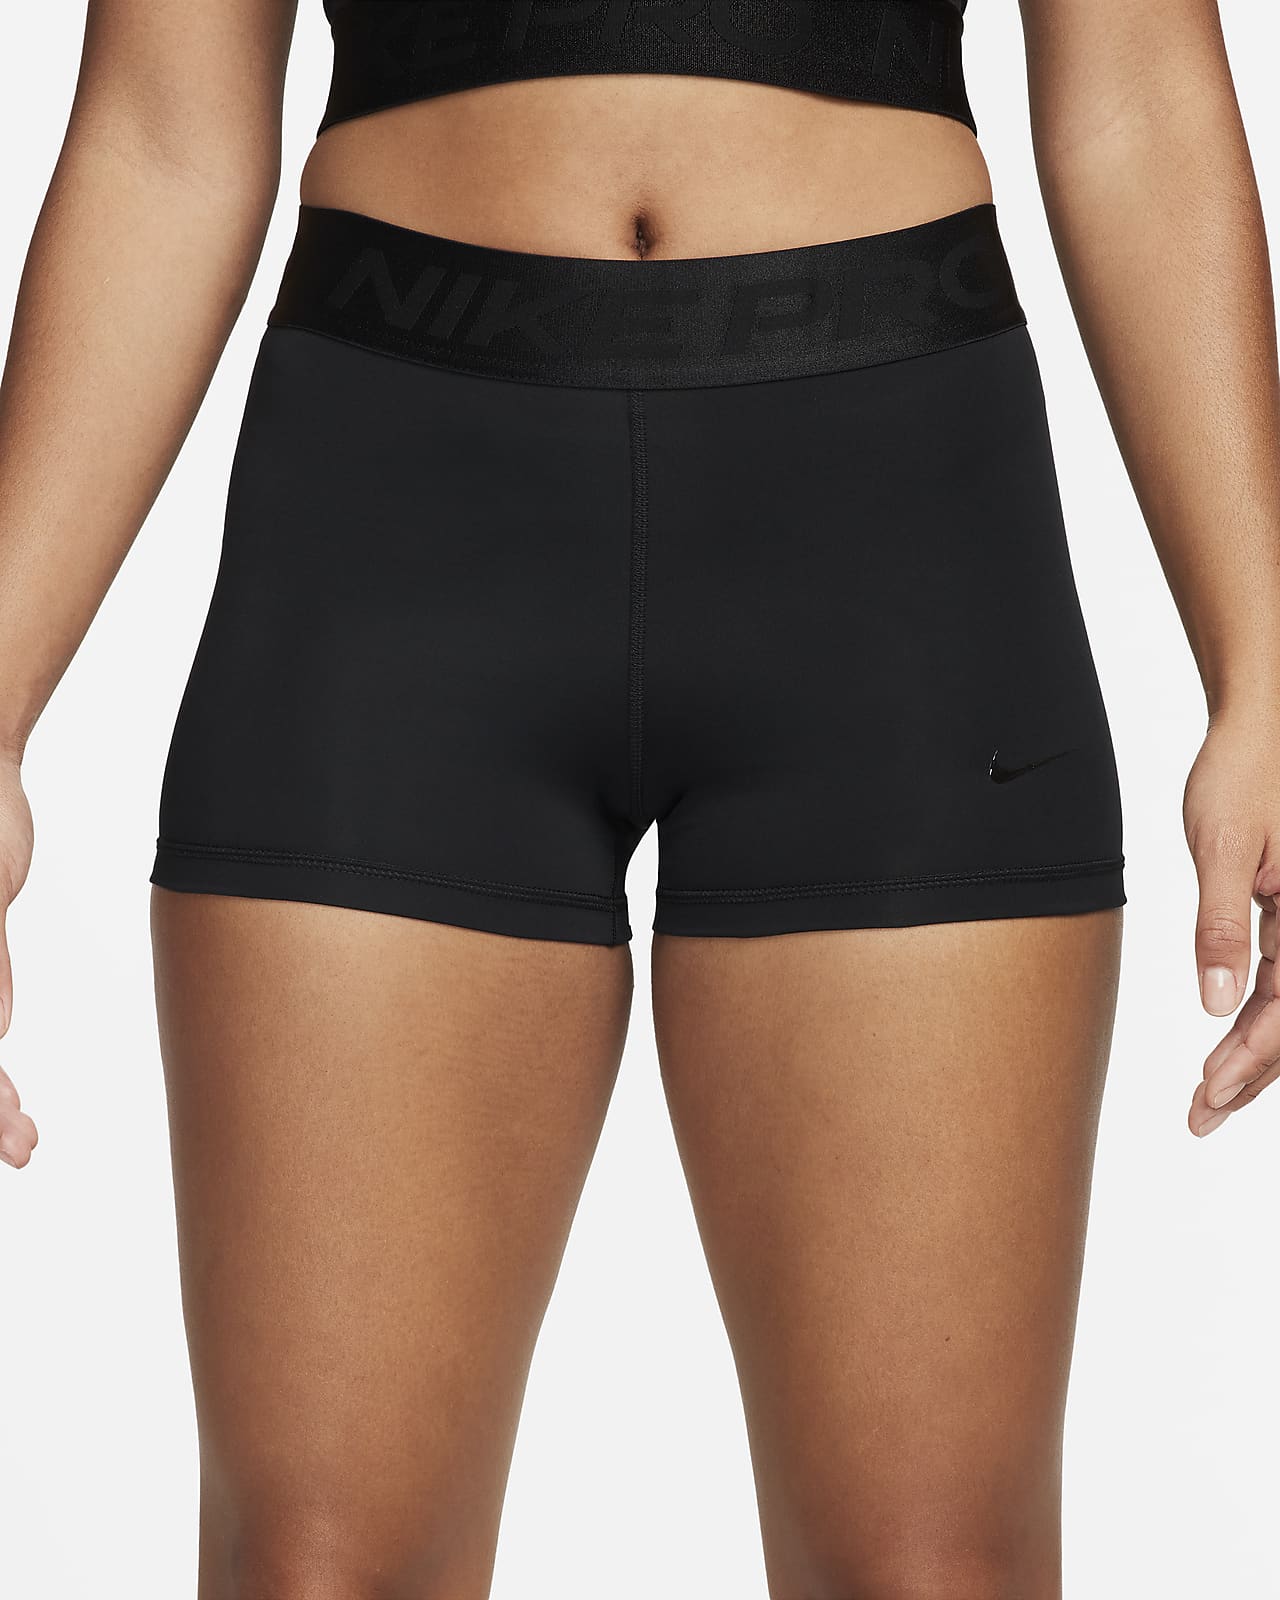 Nike Pro Shorts.